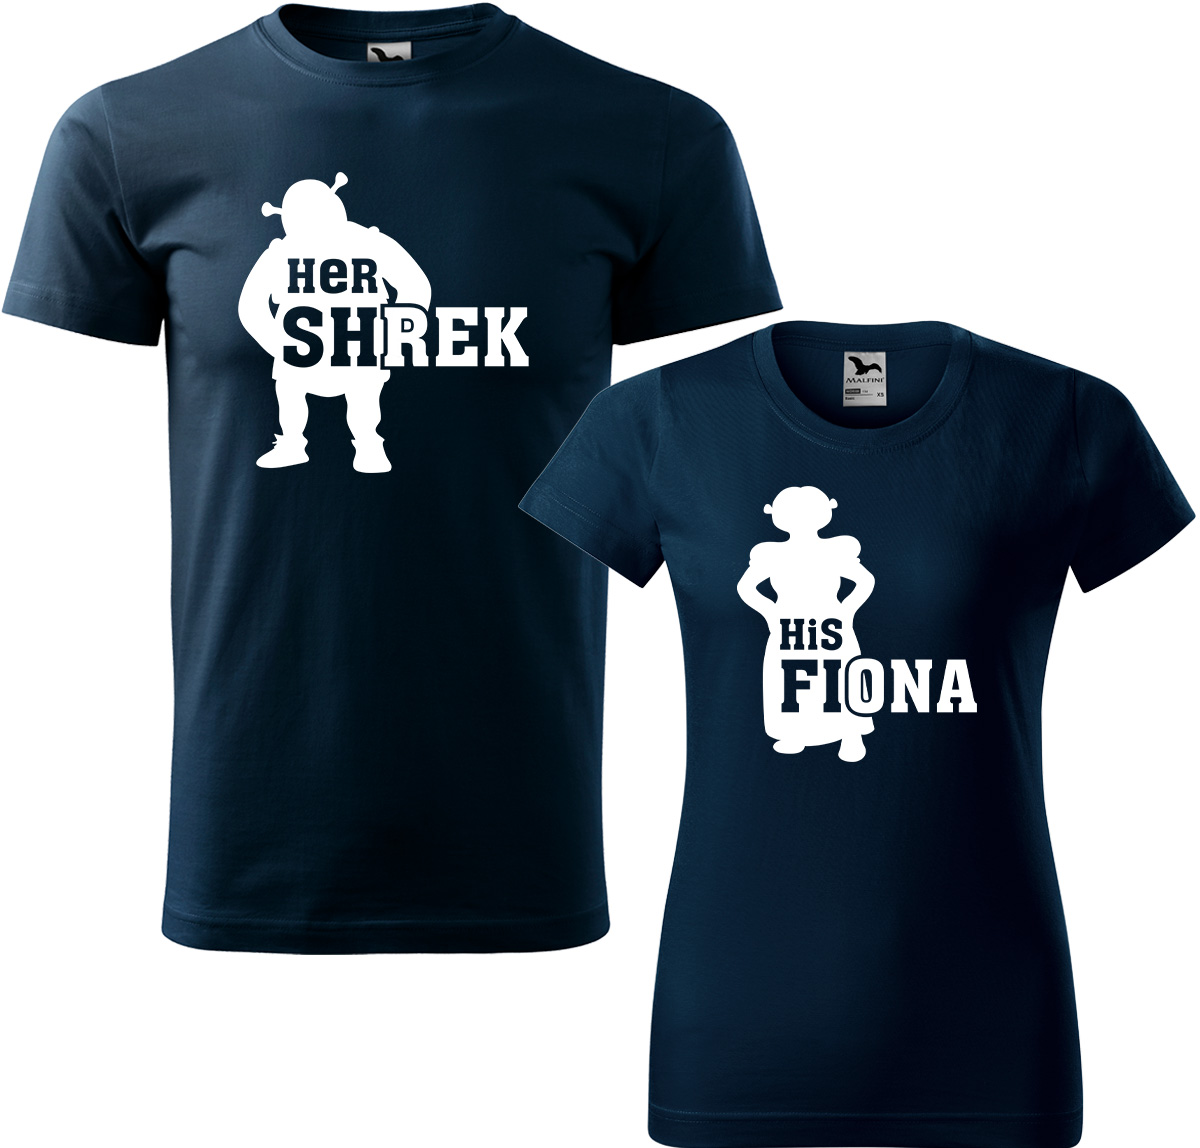 Trička pro páry - Shrek a Fiona Barva: Námořní modrá (02), Velikost dámské tričko: XL, Velikost pánské tričko: 4XL